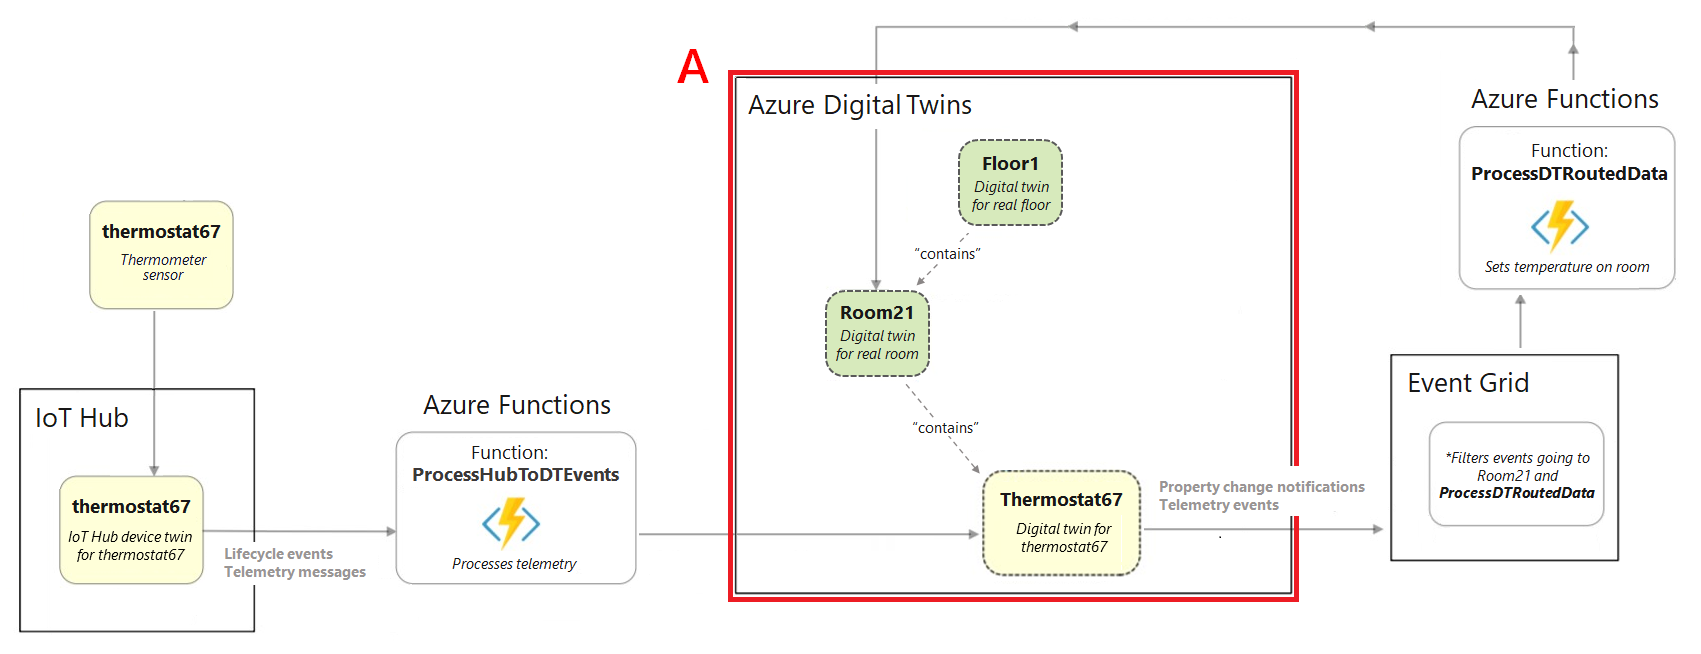 Diagrama que muestra un extracto del diagrama del escenario de creación completo. Se muestra resaltada la sección de la instancia de Azure Digital Twins.